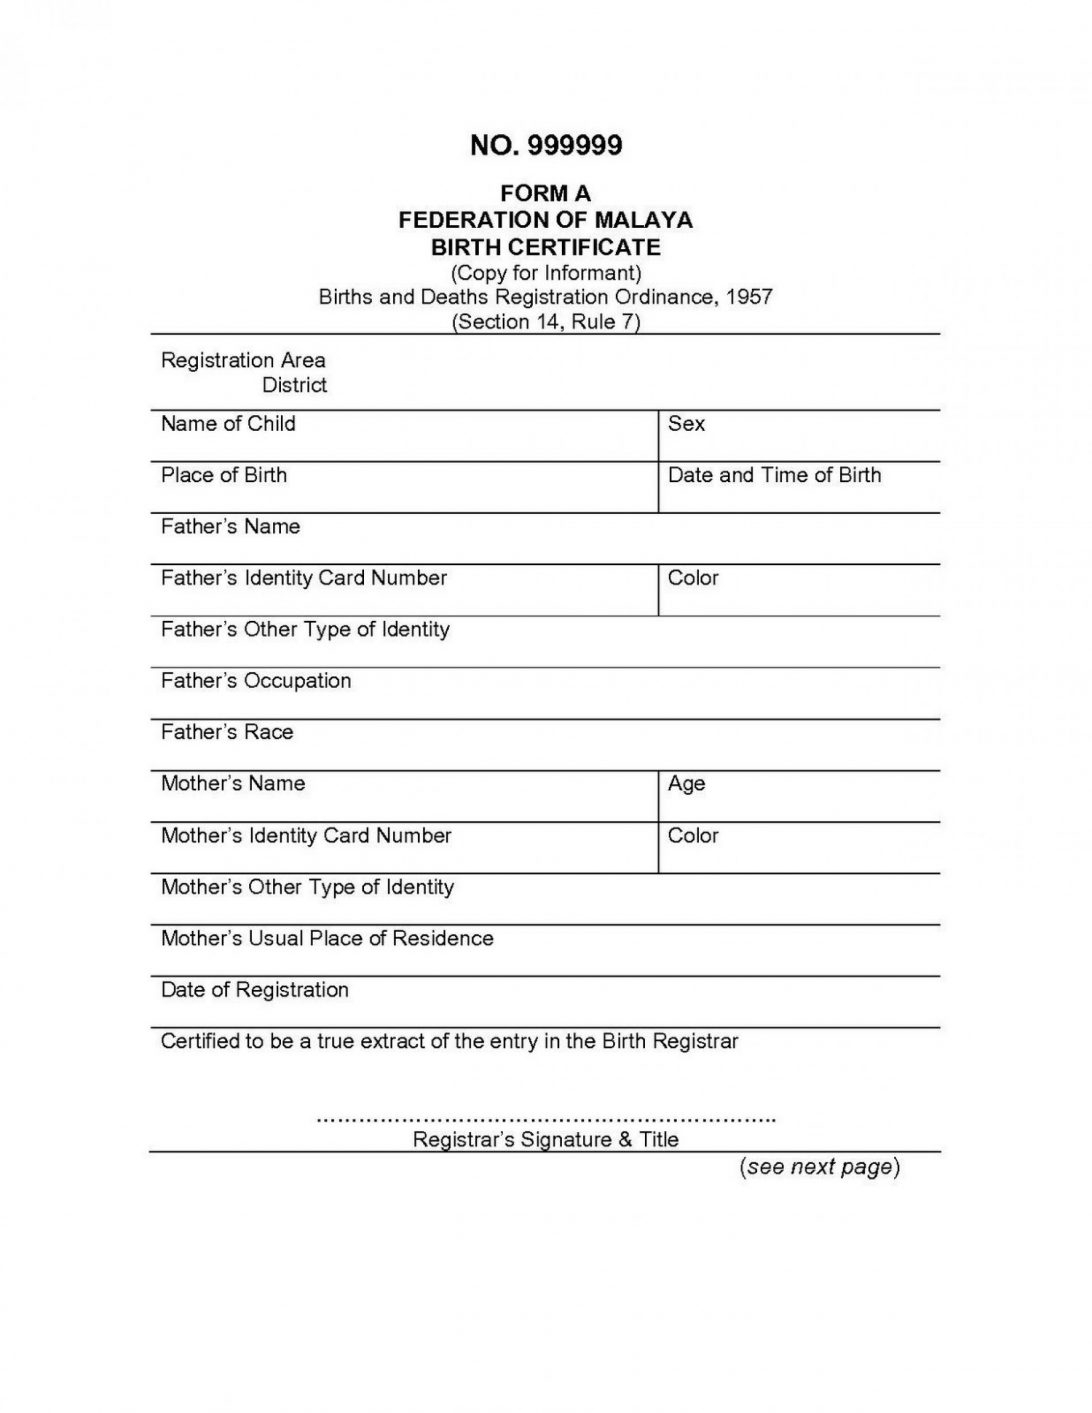 marriage-certificate-template-keepsake-muslim-format-india-inside-marriage-certificate